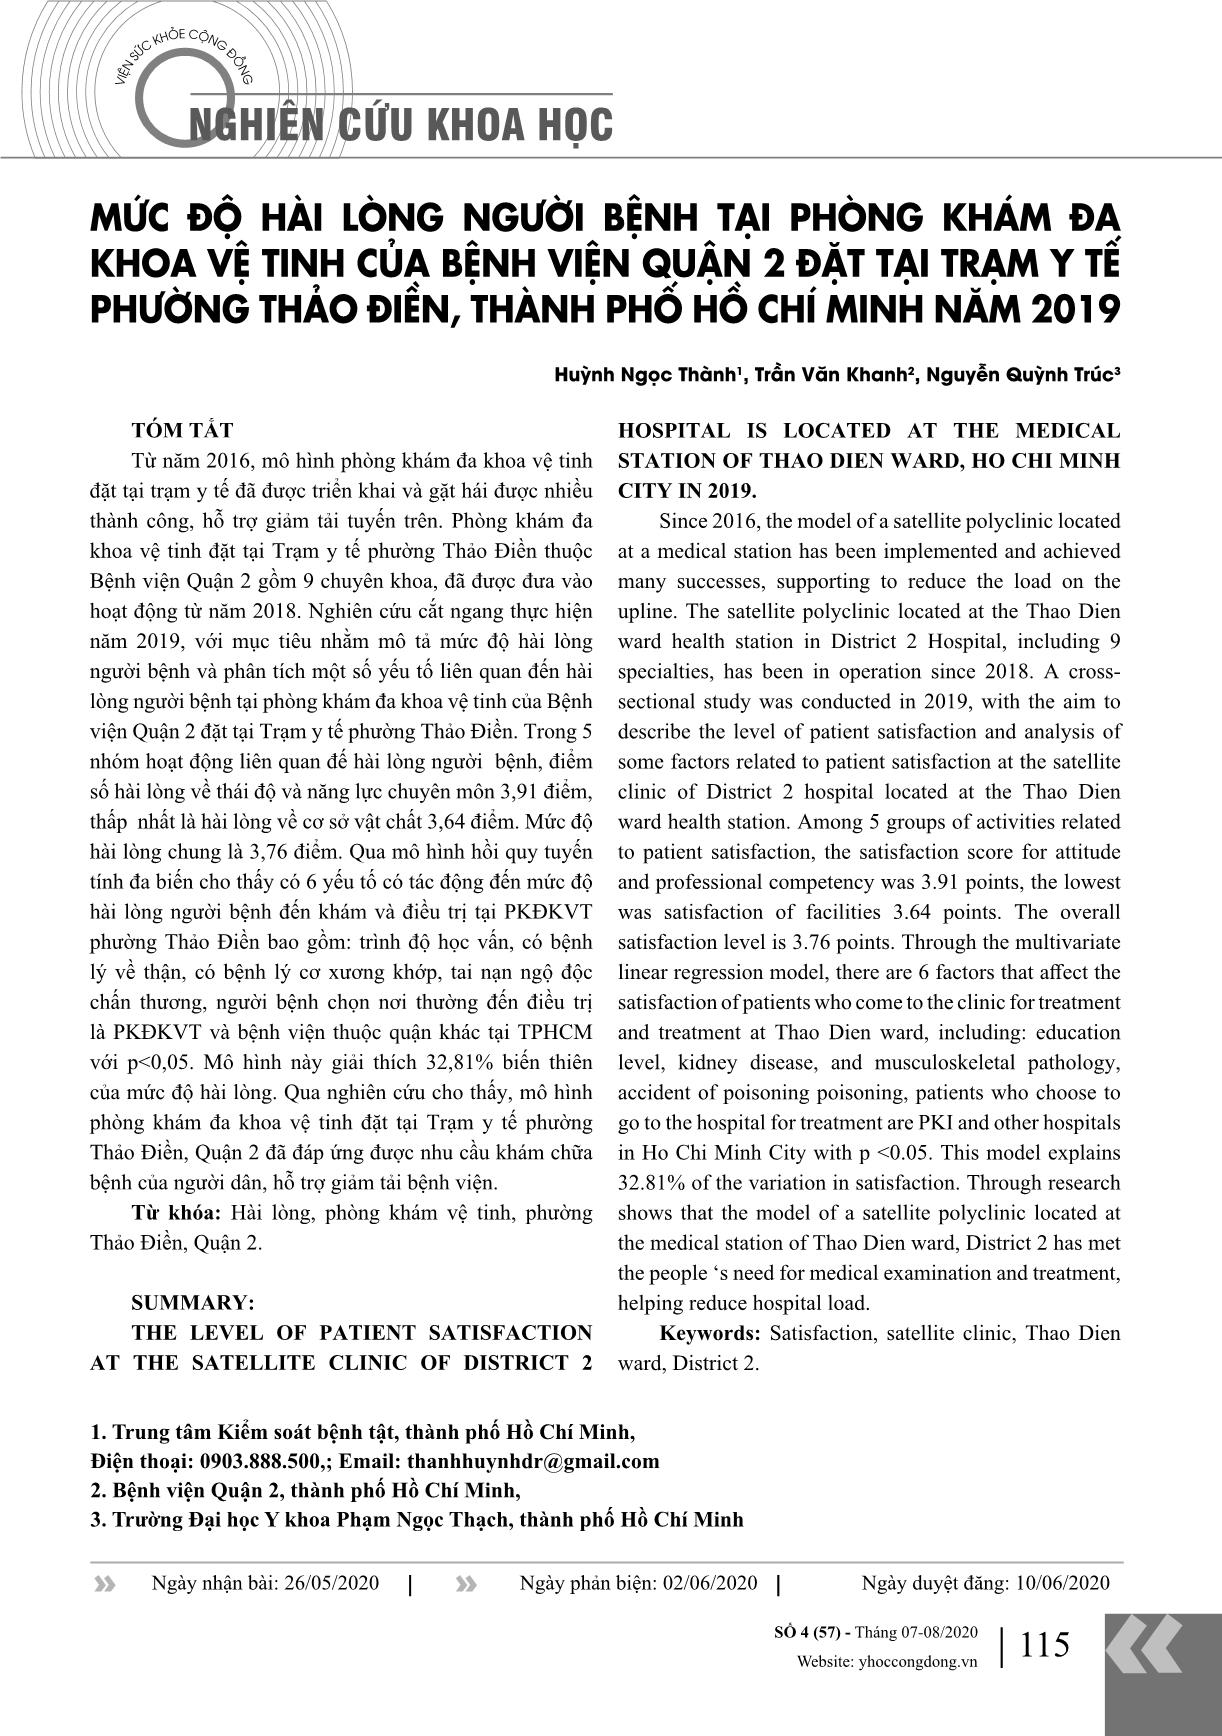 Mức độ hài lòng người bệnh tại phòng khám đa khoa vệ tinh của bệnh viện Quận 2 đặt tại Trạm y tế phường Thảo Điền, thành phố Hồ Chí Minh năm 2019 trang 1